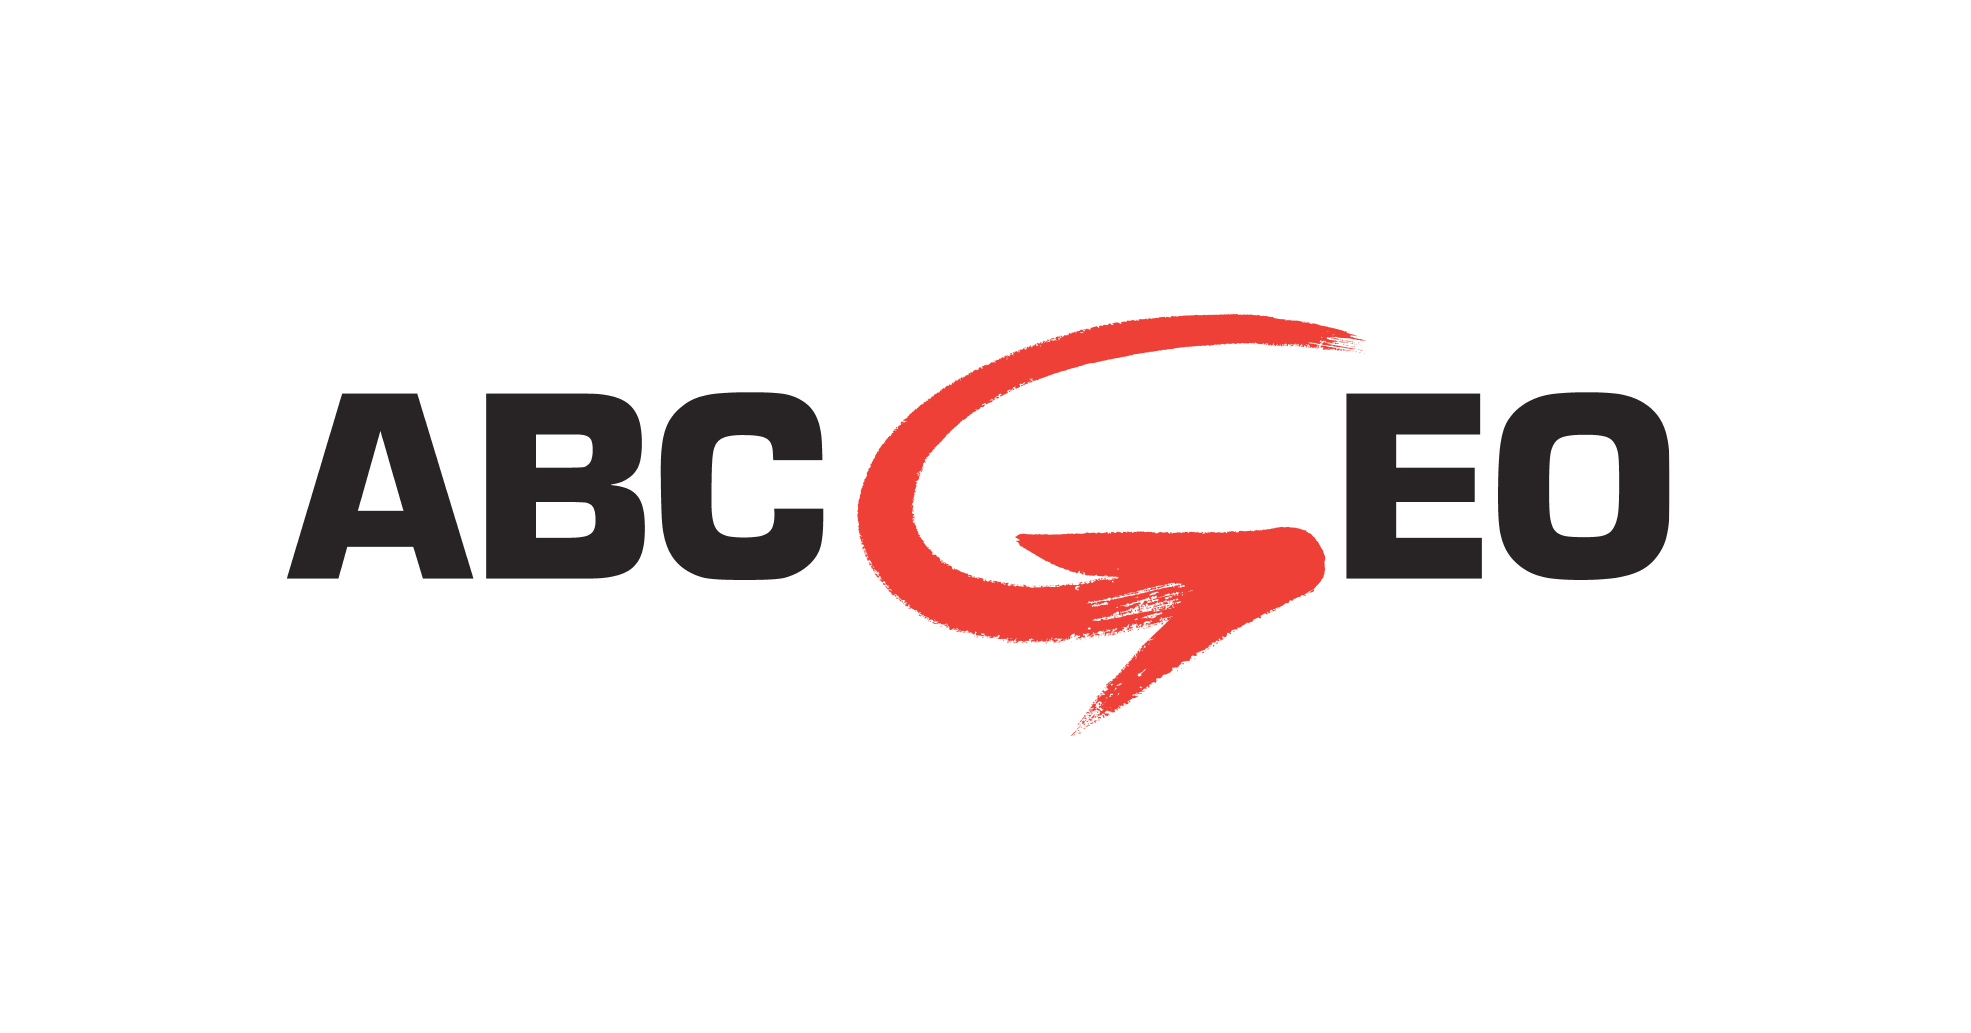 Podjetje ABC GEO, geodetske storitve in inženiring